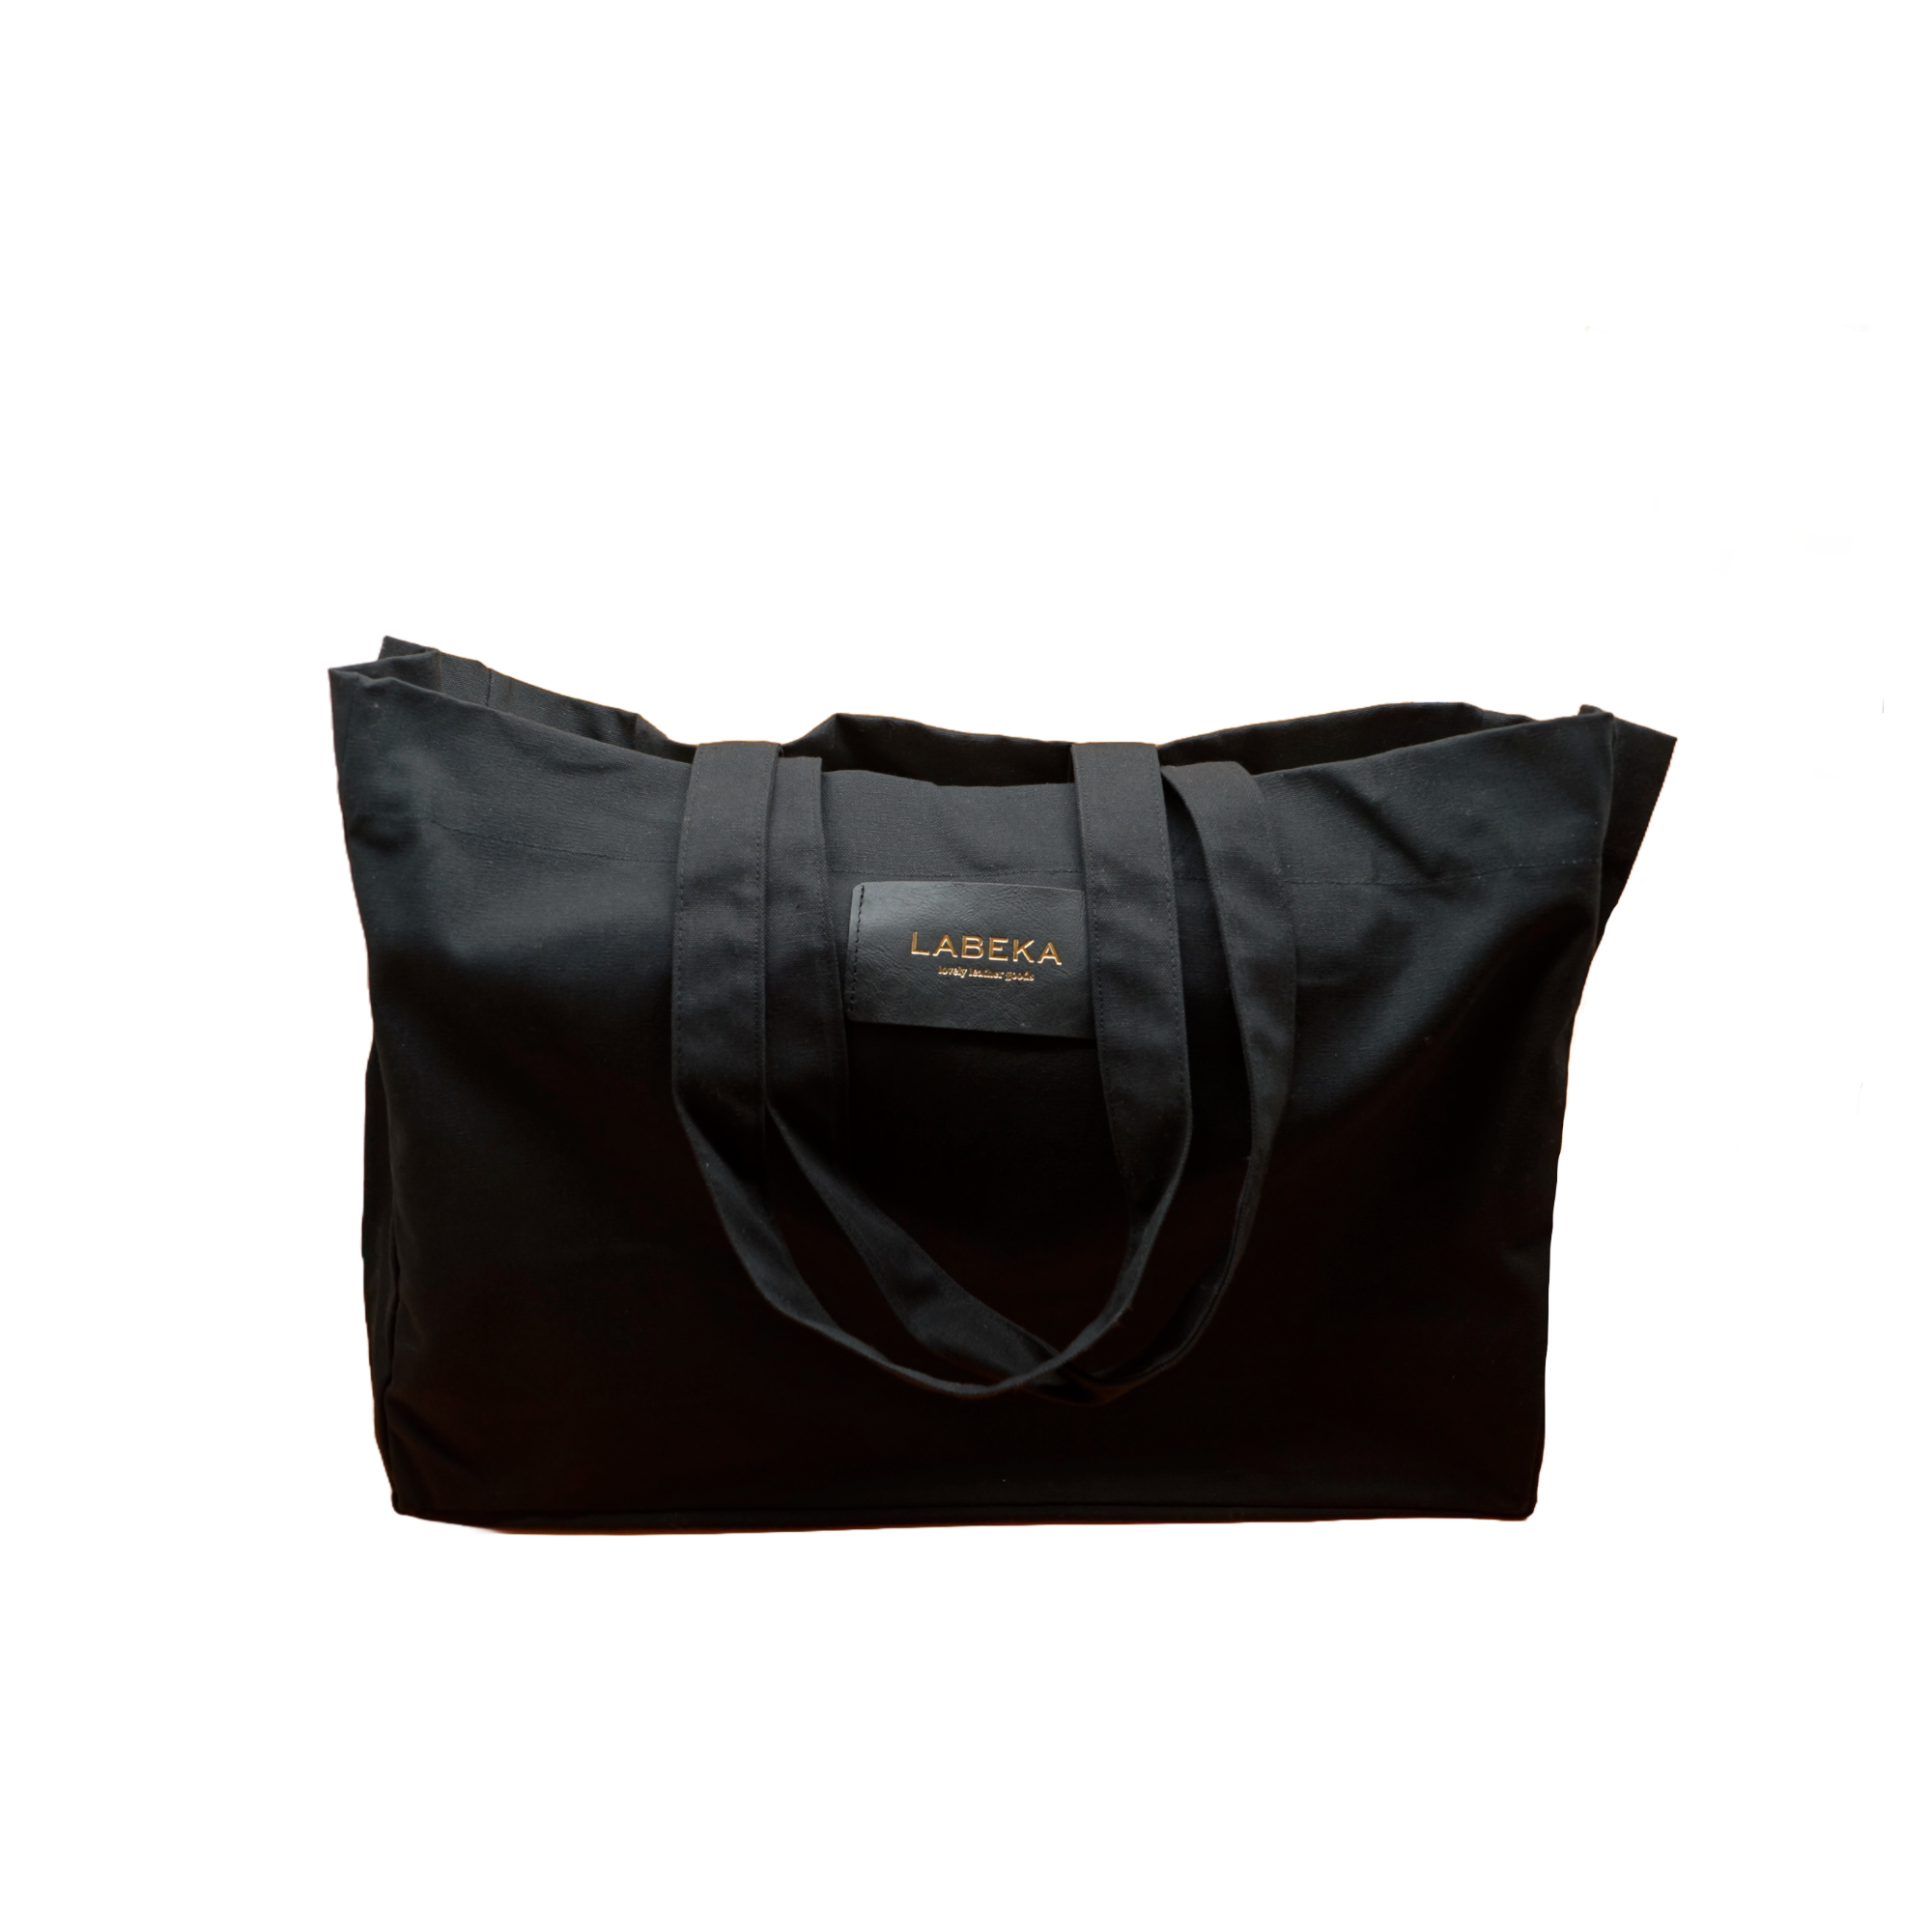 Schwarze Shopping Bag aus Baumwolle von LABEKA